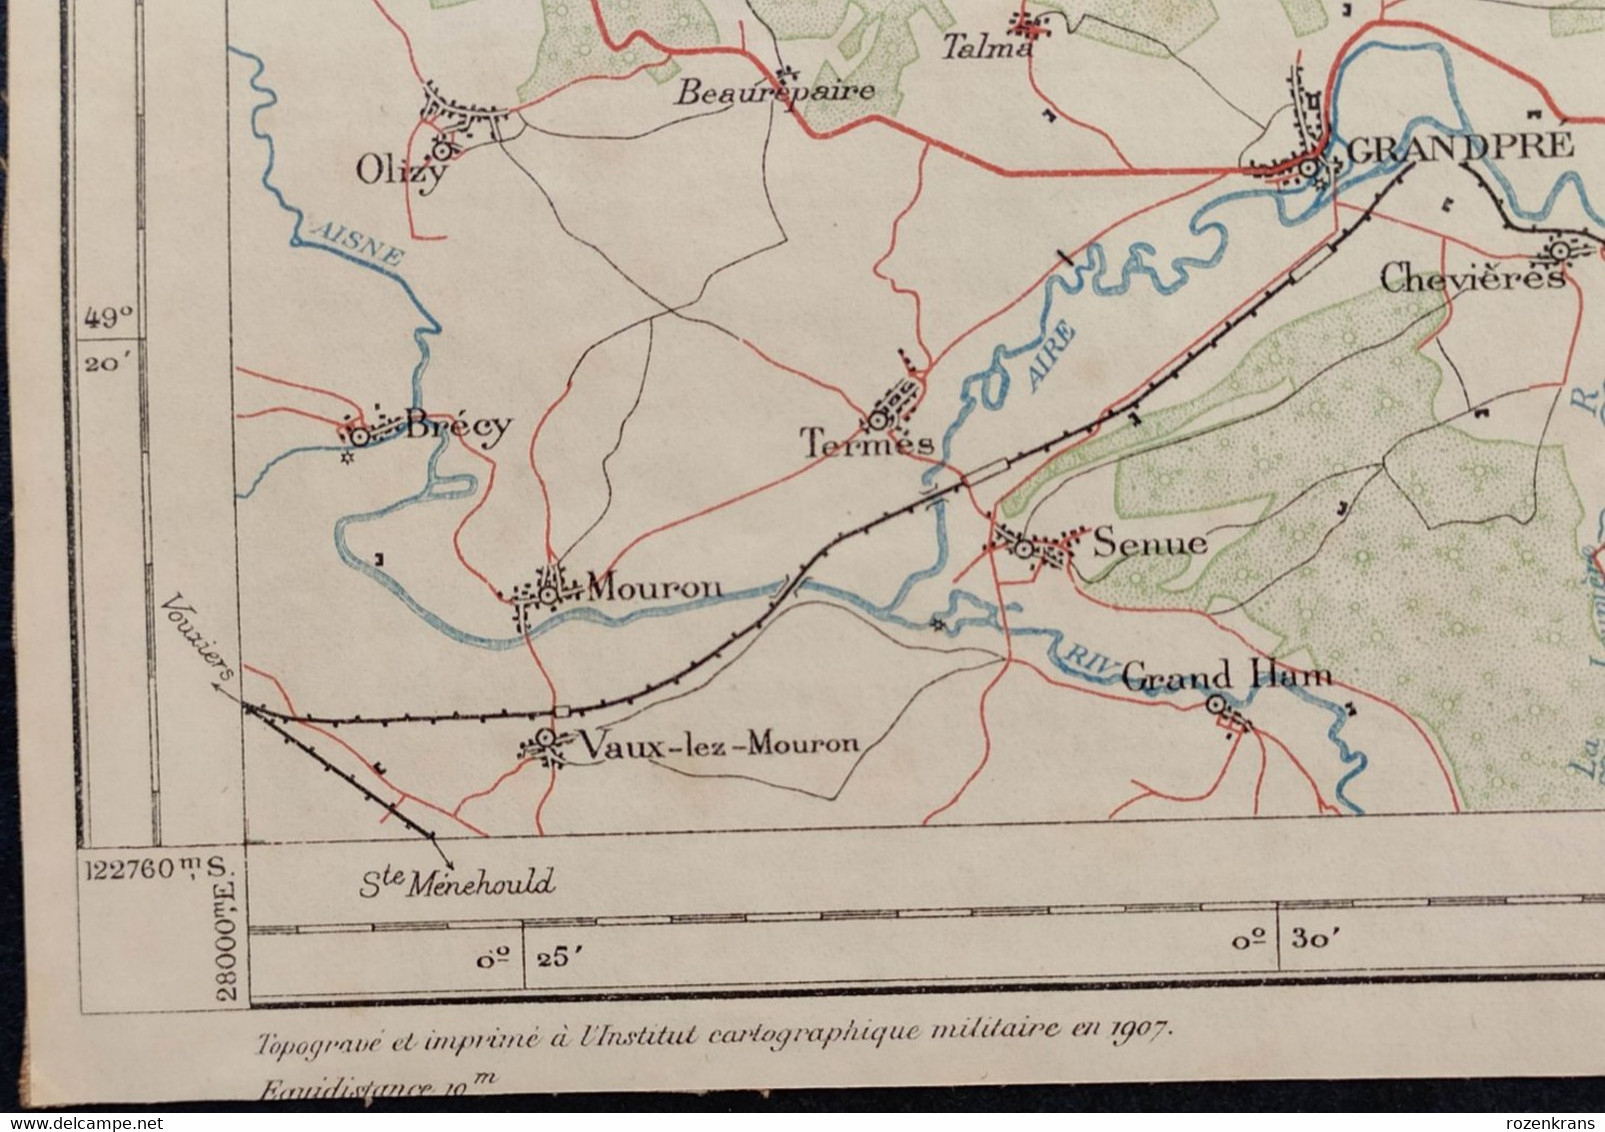 Carte topographique toilée militaire STAFKAART 1907 Villers Devant Orval Vendresse Le Chesne Jametz Mouzon Stenay